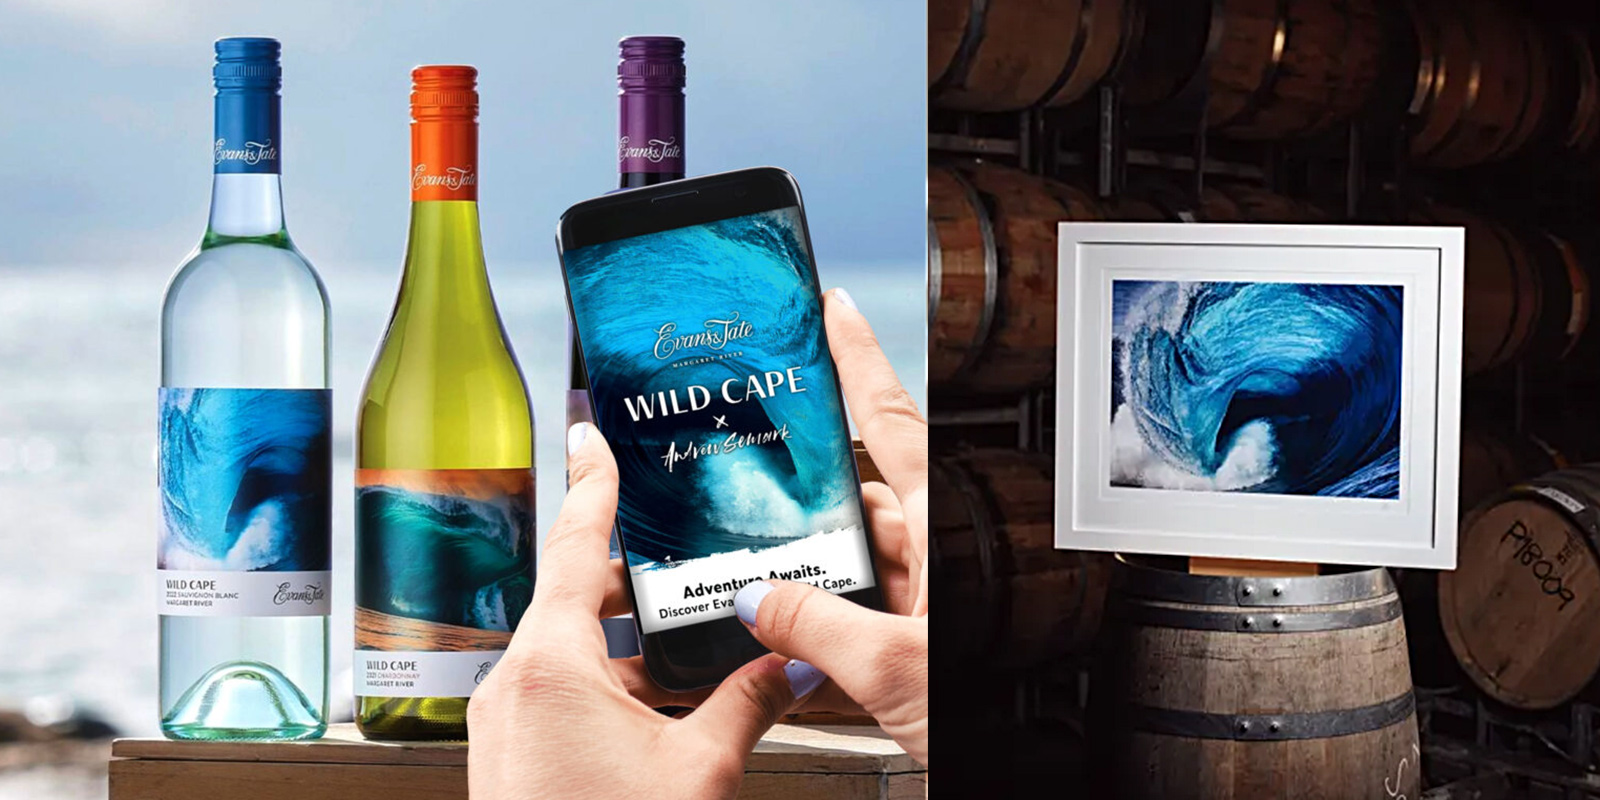 Acercamiento a manos de mujer escaneando con un smartphone etiquetas de vino con fotografías artísticas. En la pantalla se ve una app vinculada a las fotografías.